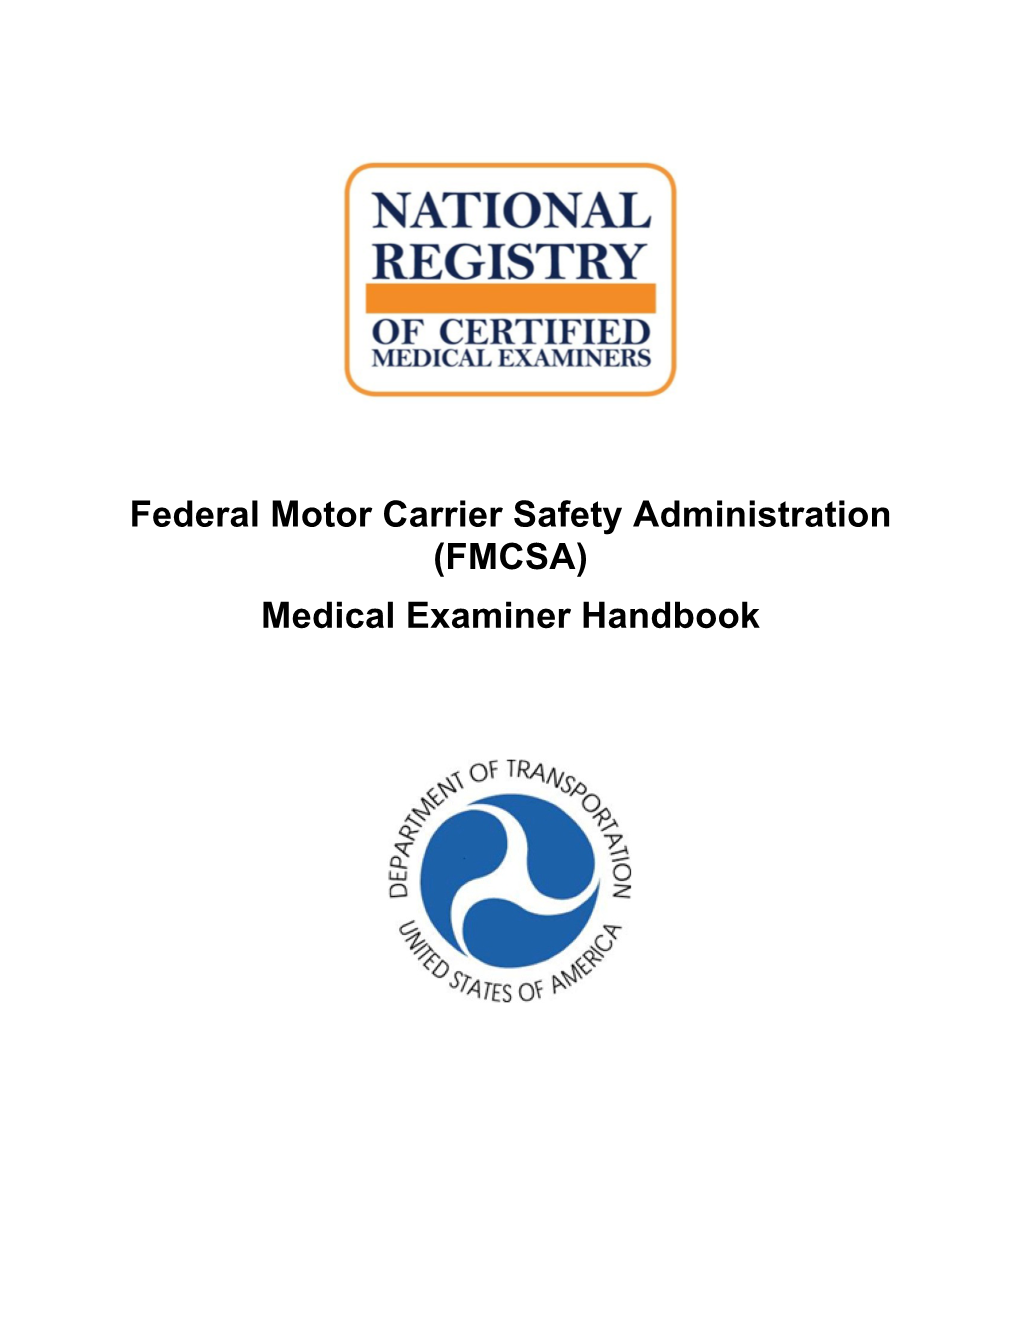 FMCSA DOT Medical Examiner Handbook